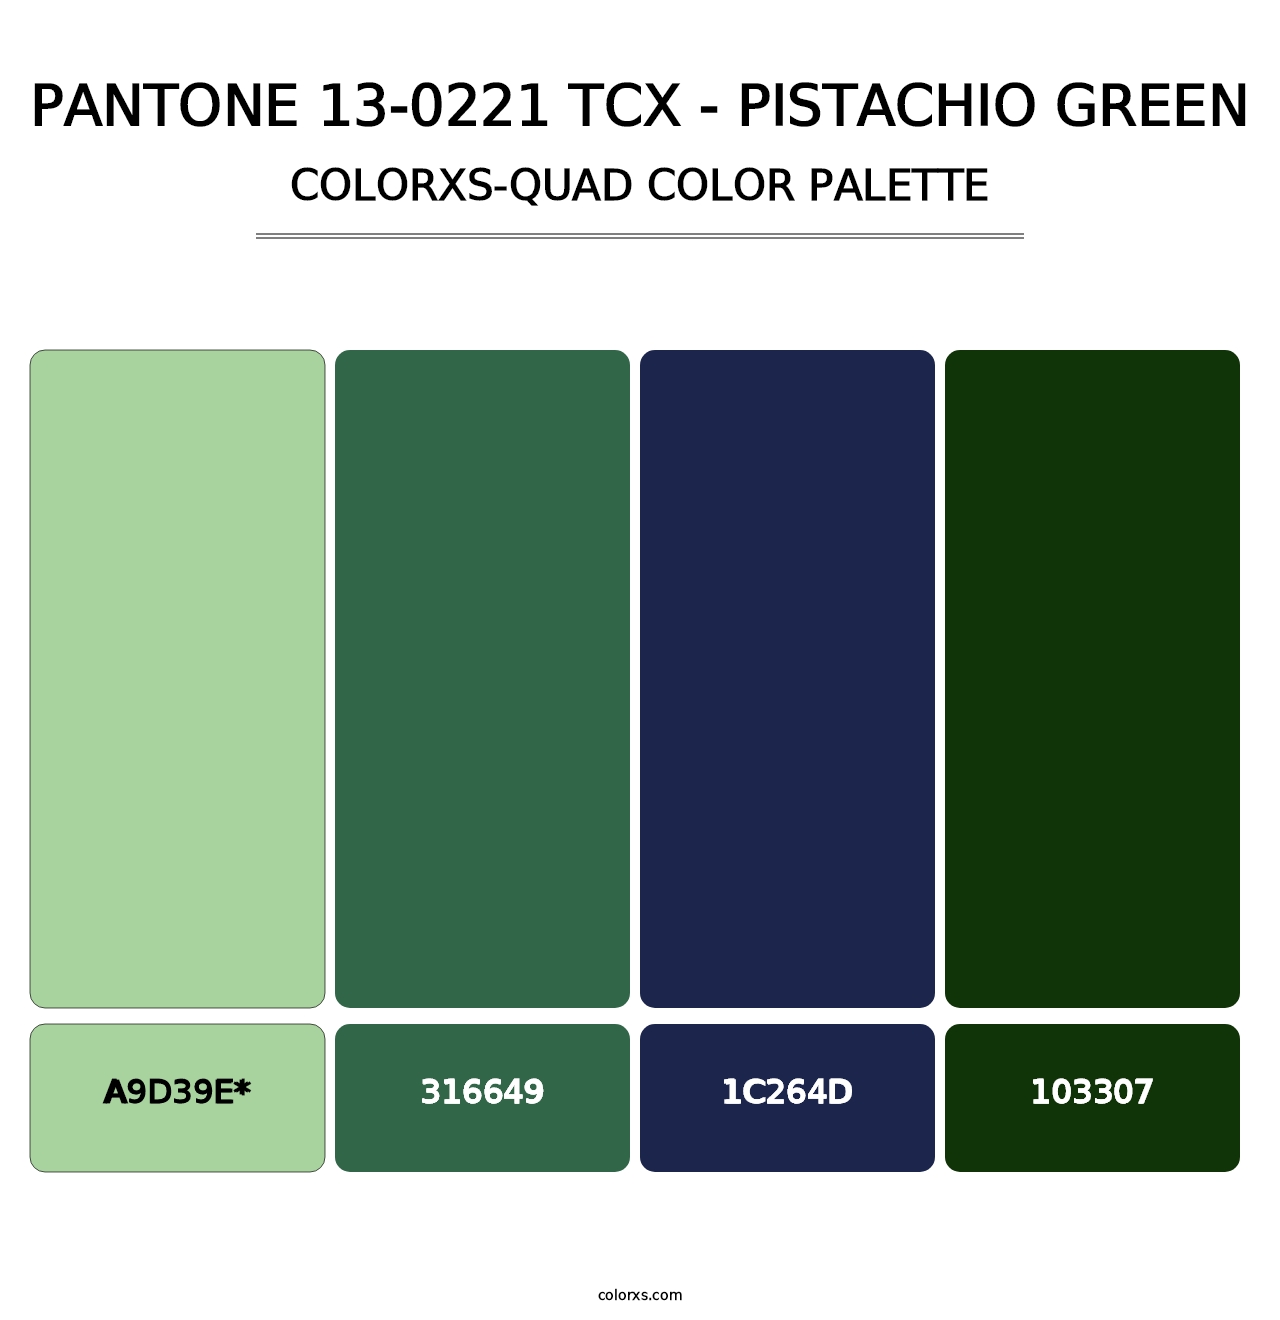 PANTONE 13-0221 TCX - Pistachio Green - Colorxs Quad Palette